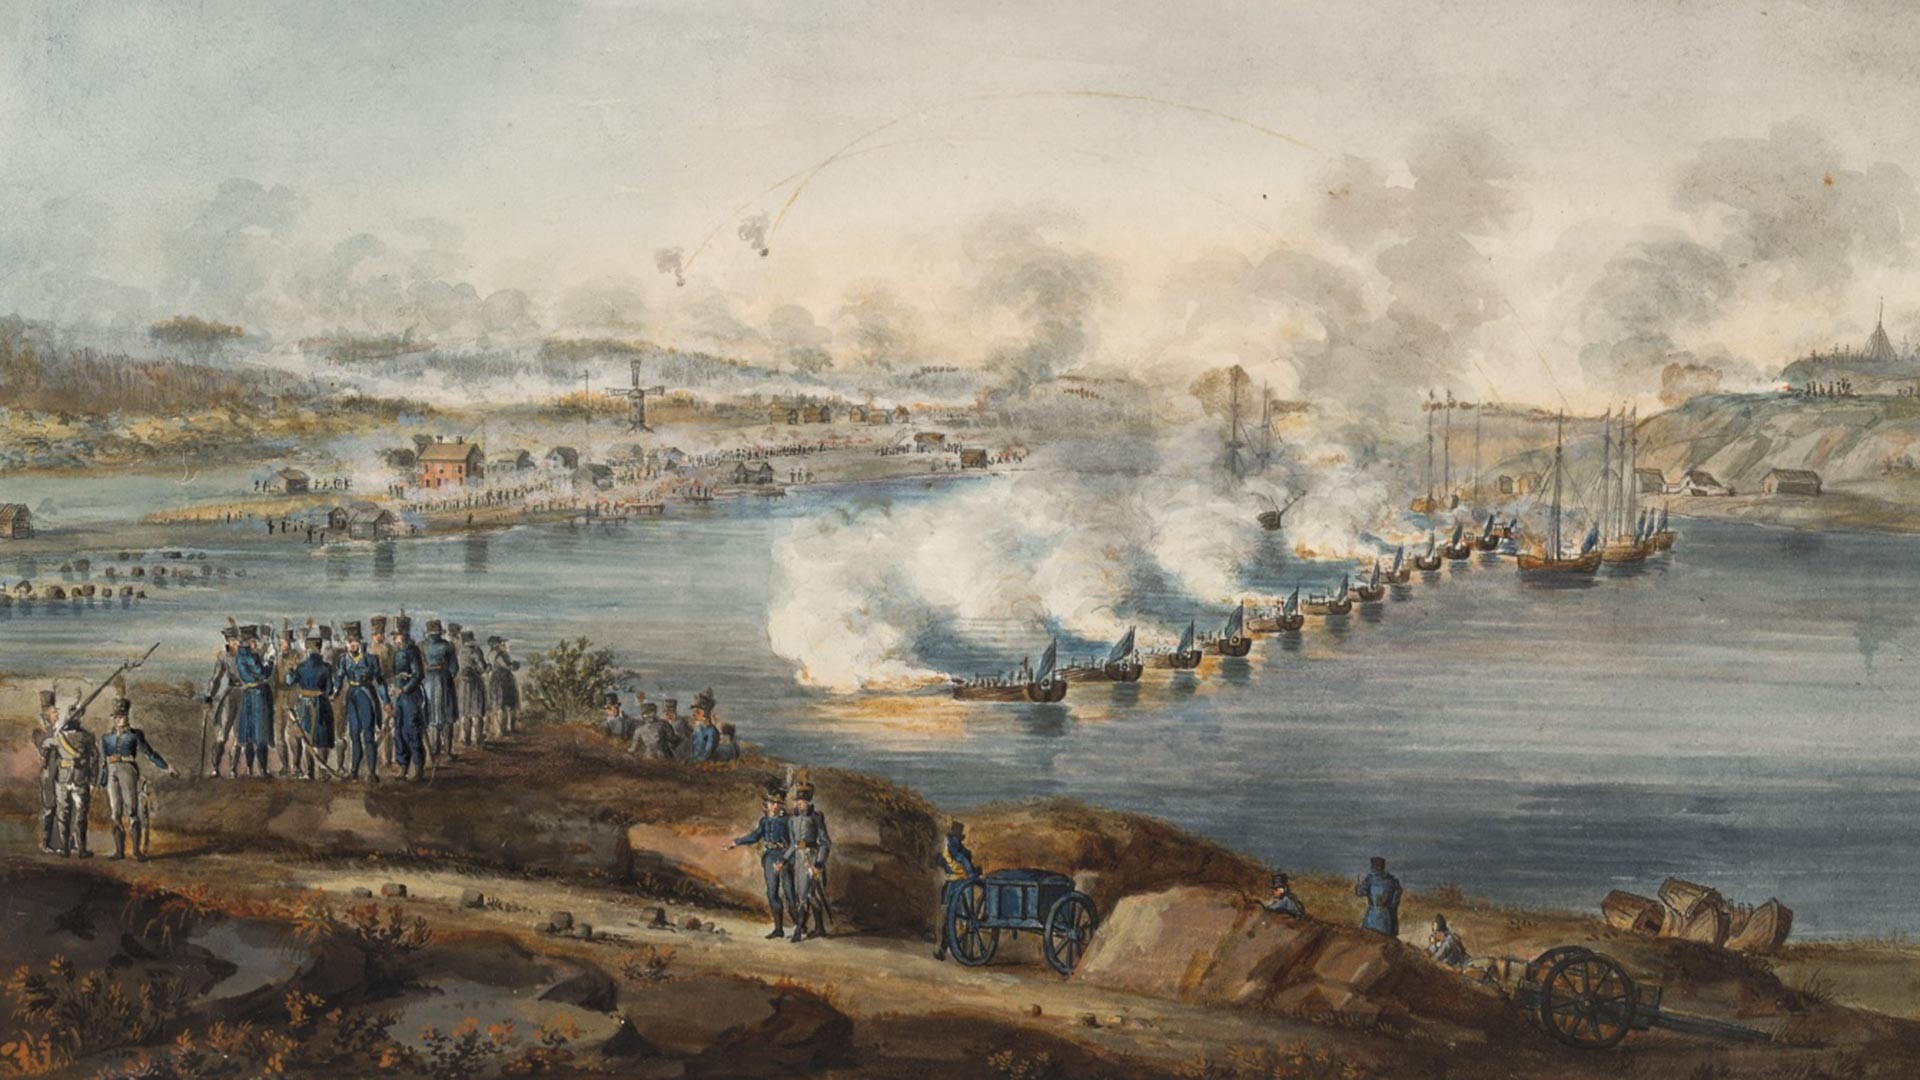 La battaglia di Ratan, 1809
